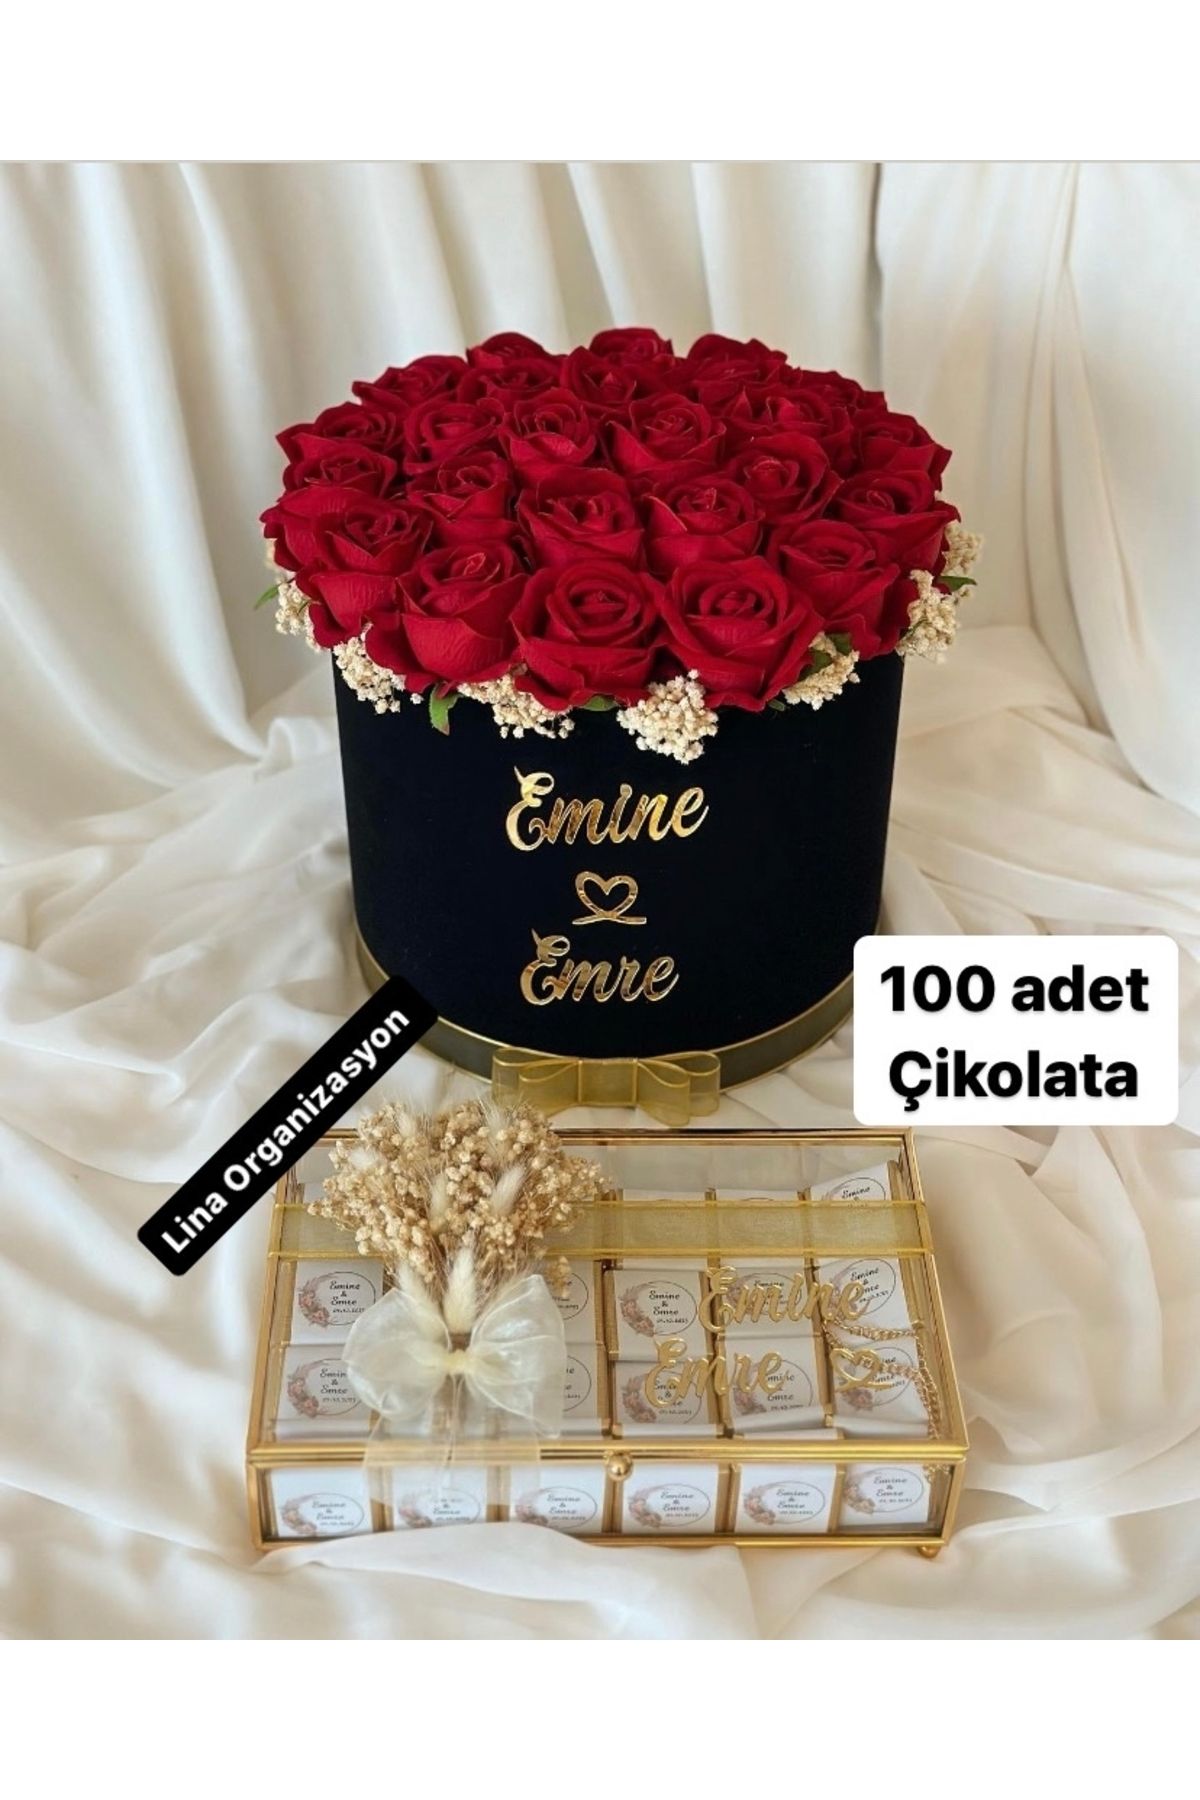 eyb lina organizasyon Isteme Çiçeği Isteme Çikolatası Söz Çiçeği Kız Isteme Çikolatası 100 Adet Çikolata